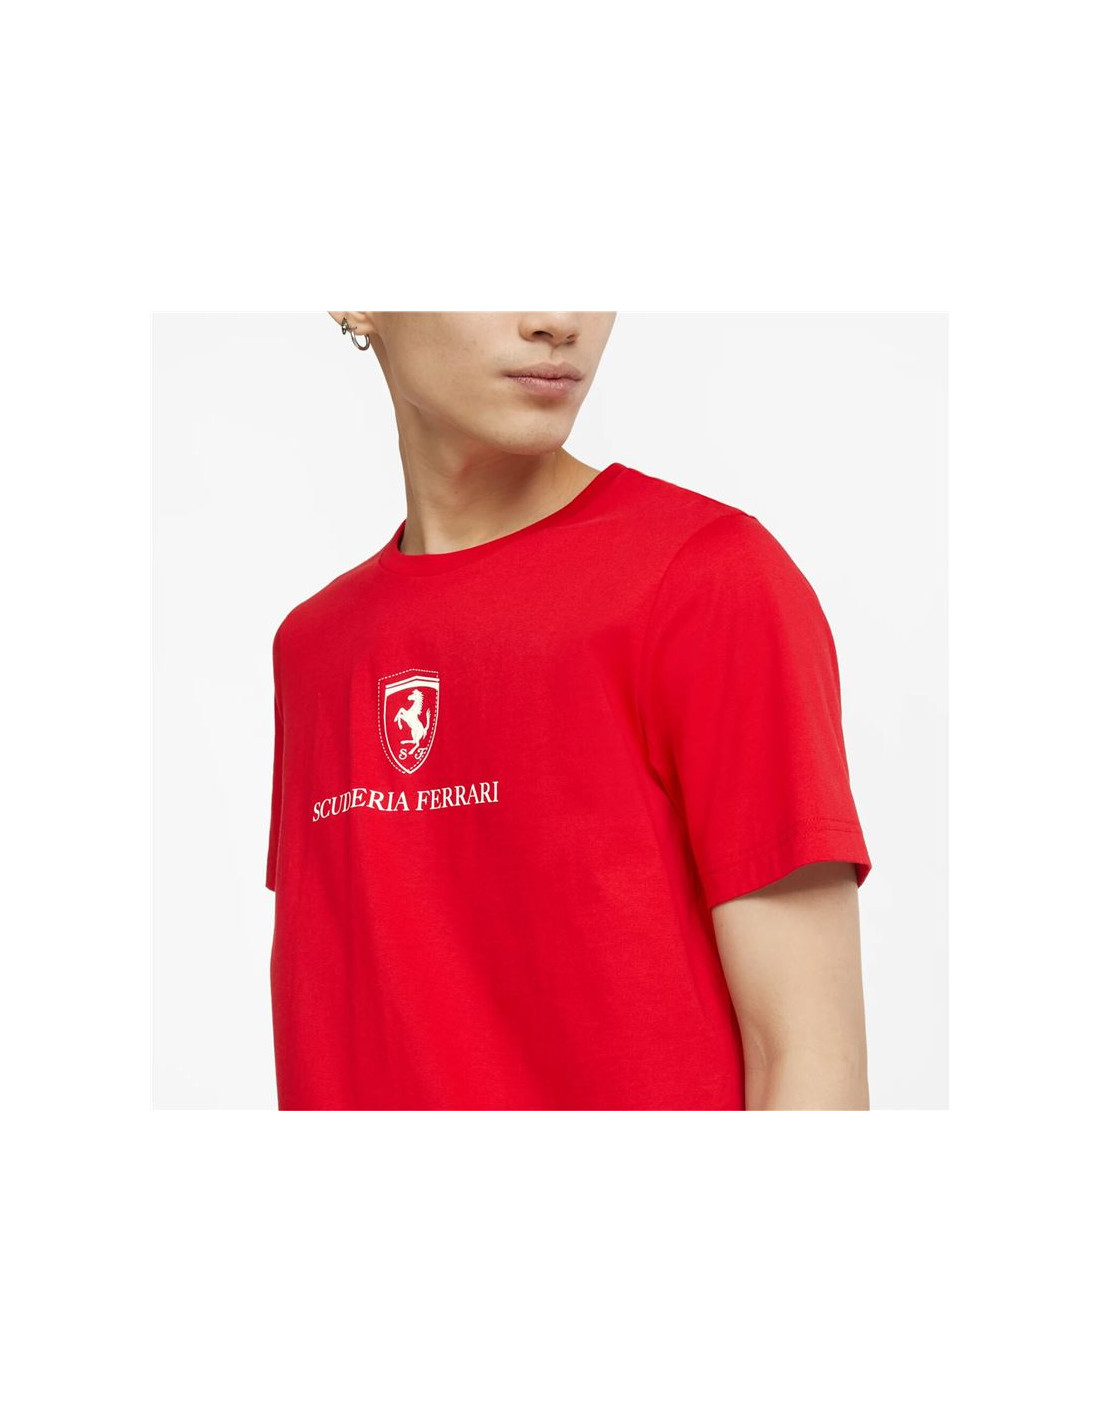 Camiseta Ferrari Race Graphic M Red